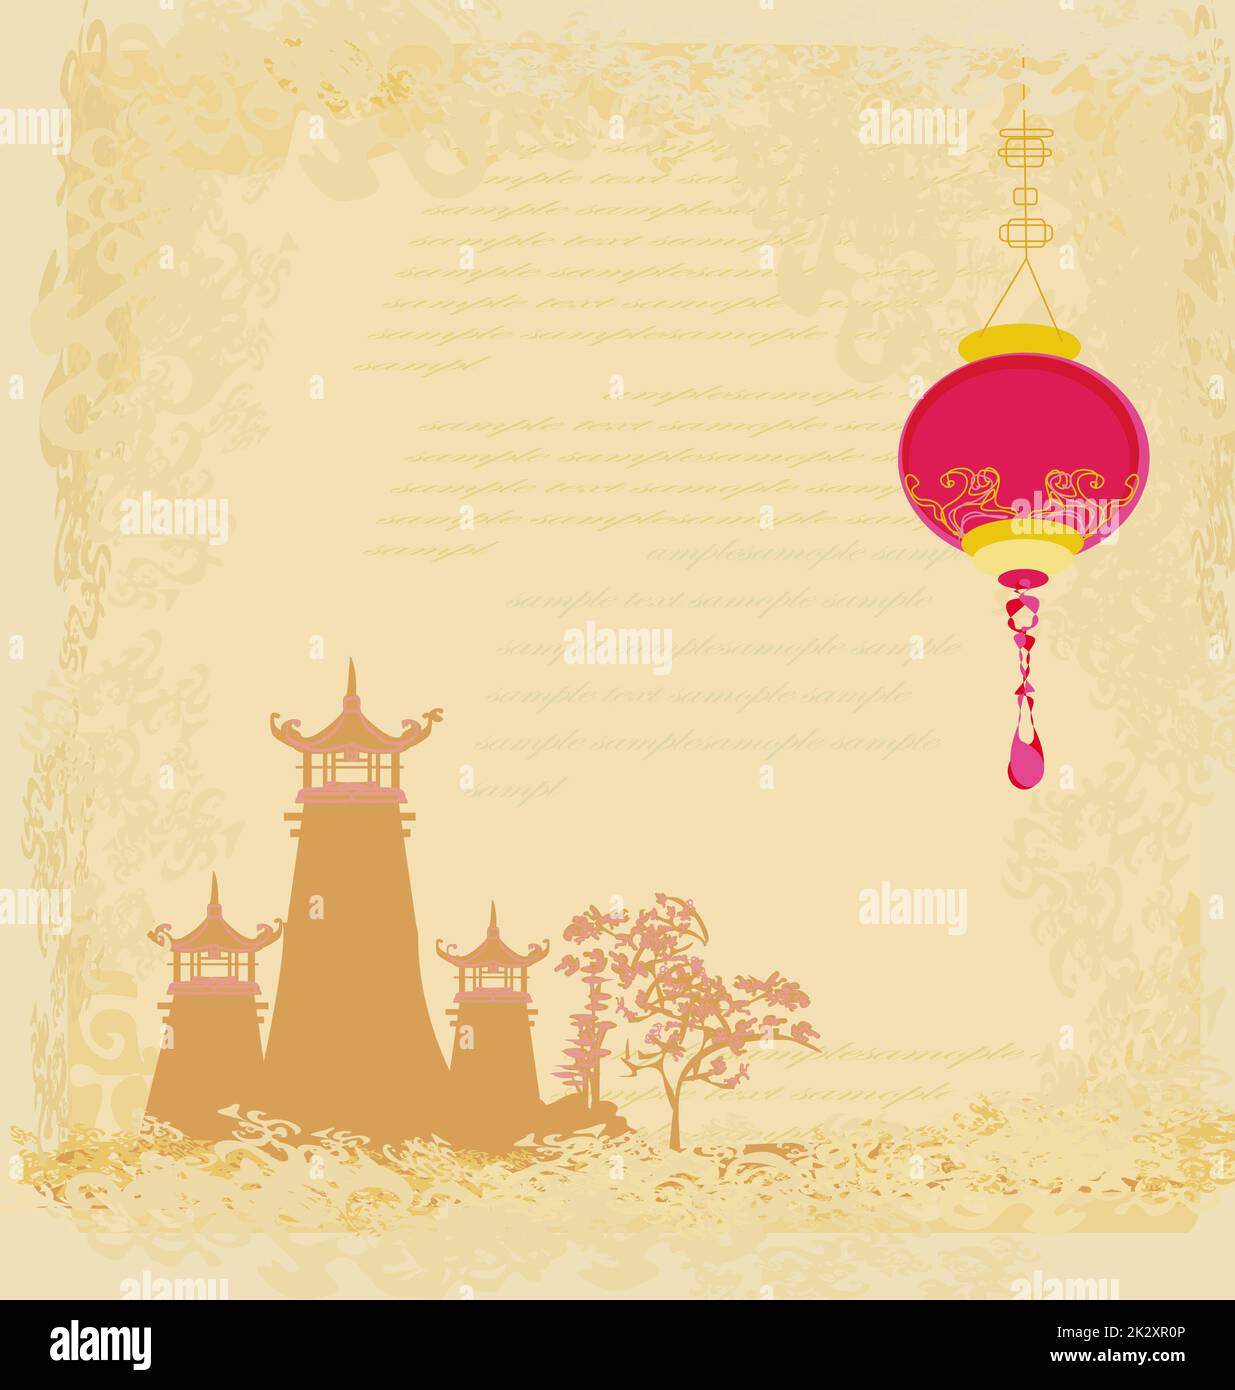 Vieux papier avec paysage asiatique et lanternes chinoises - vintage japanese style background Banque D'Images